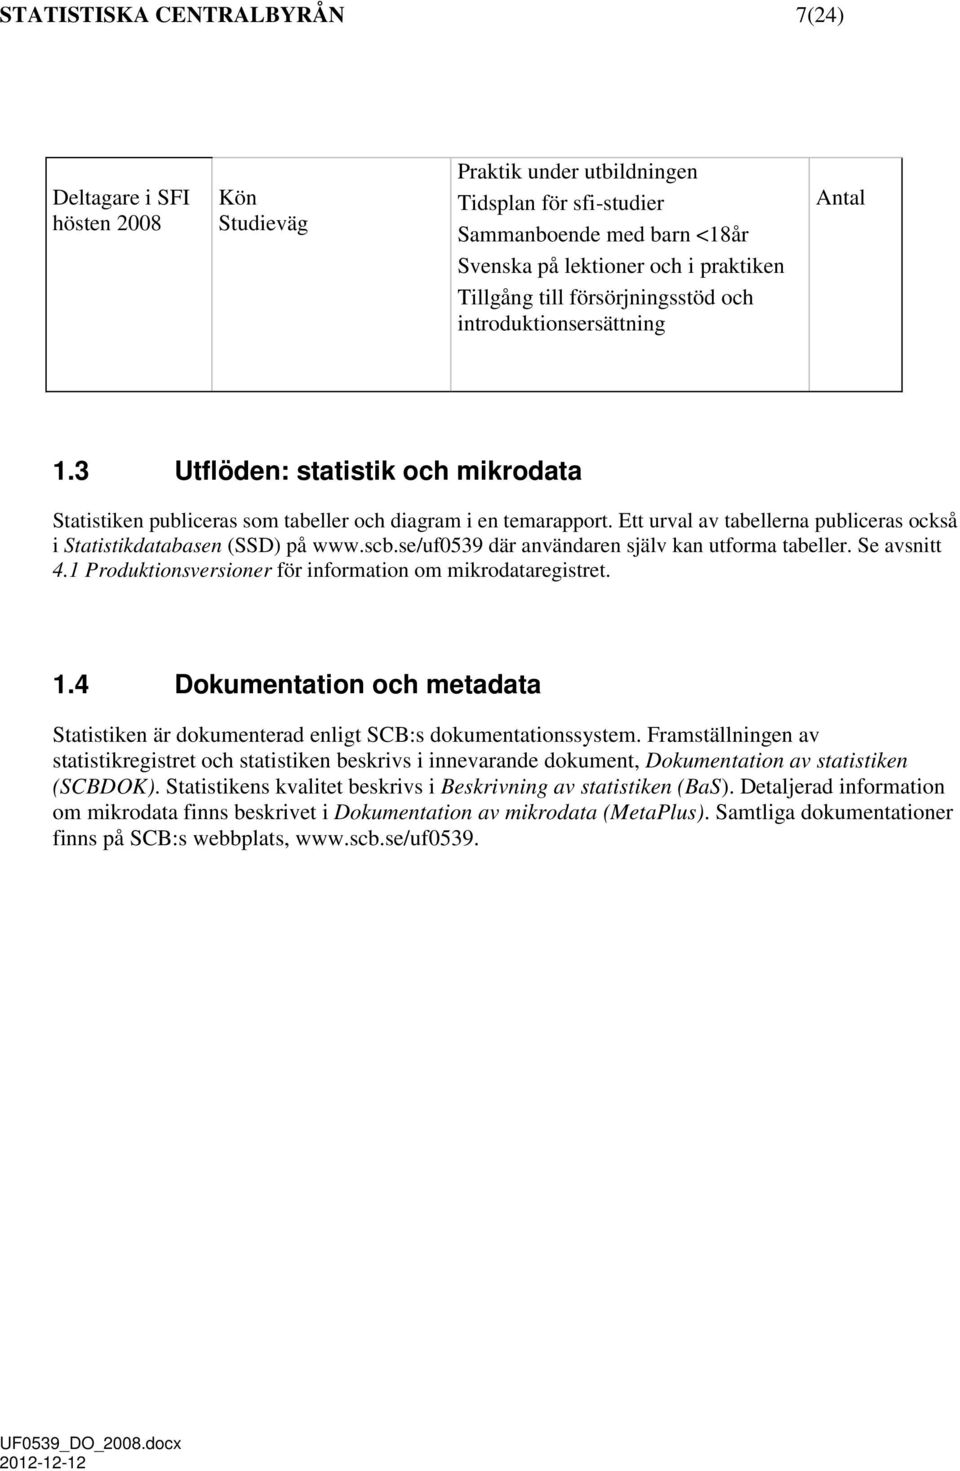 Ett urval av tabellerna publiceras också i Statistikdatabasen (SSD) på www.scb.se/uf0539 där användaren själv kan utforma tabeller. Se avsnitt 4.